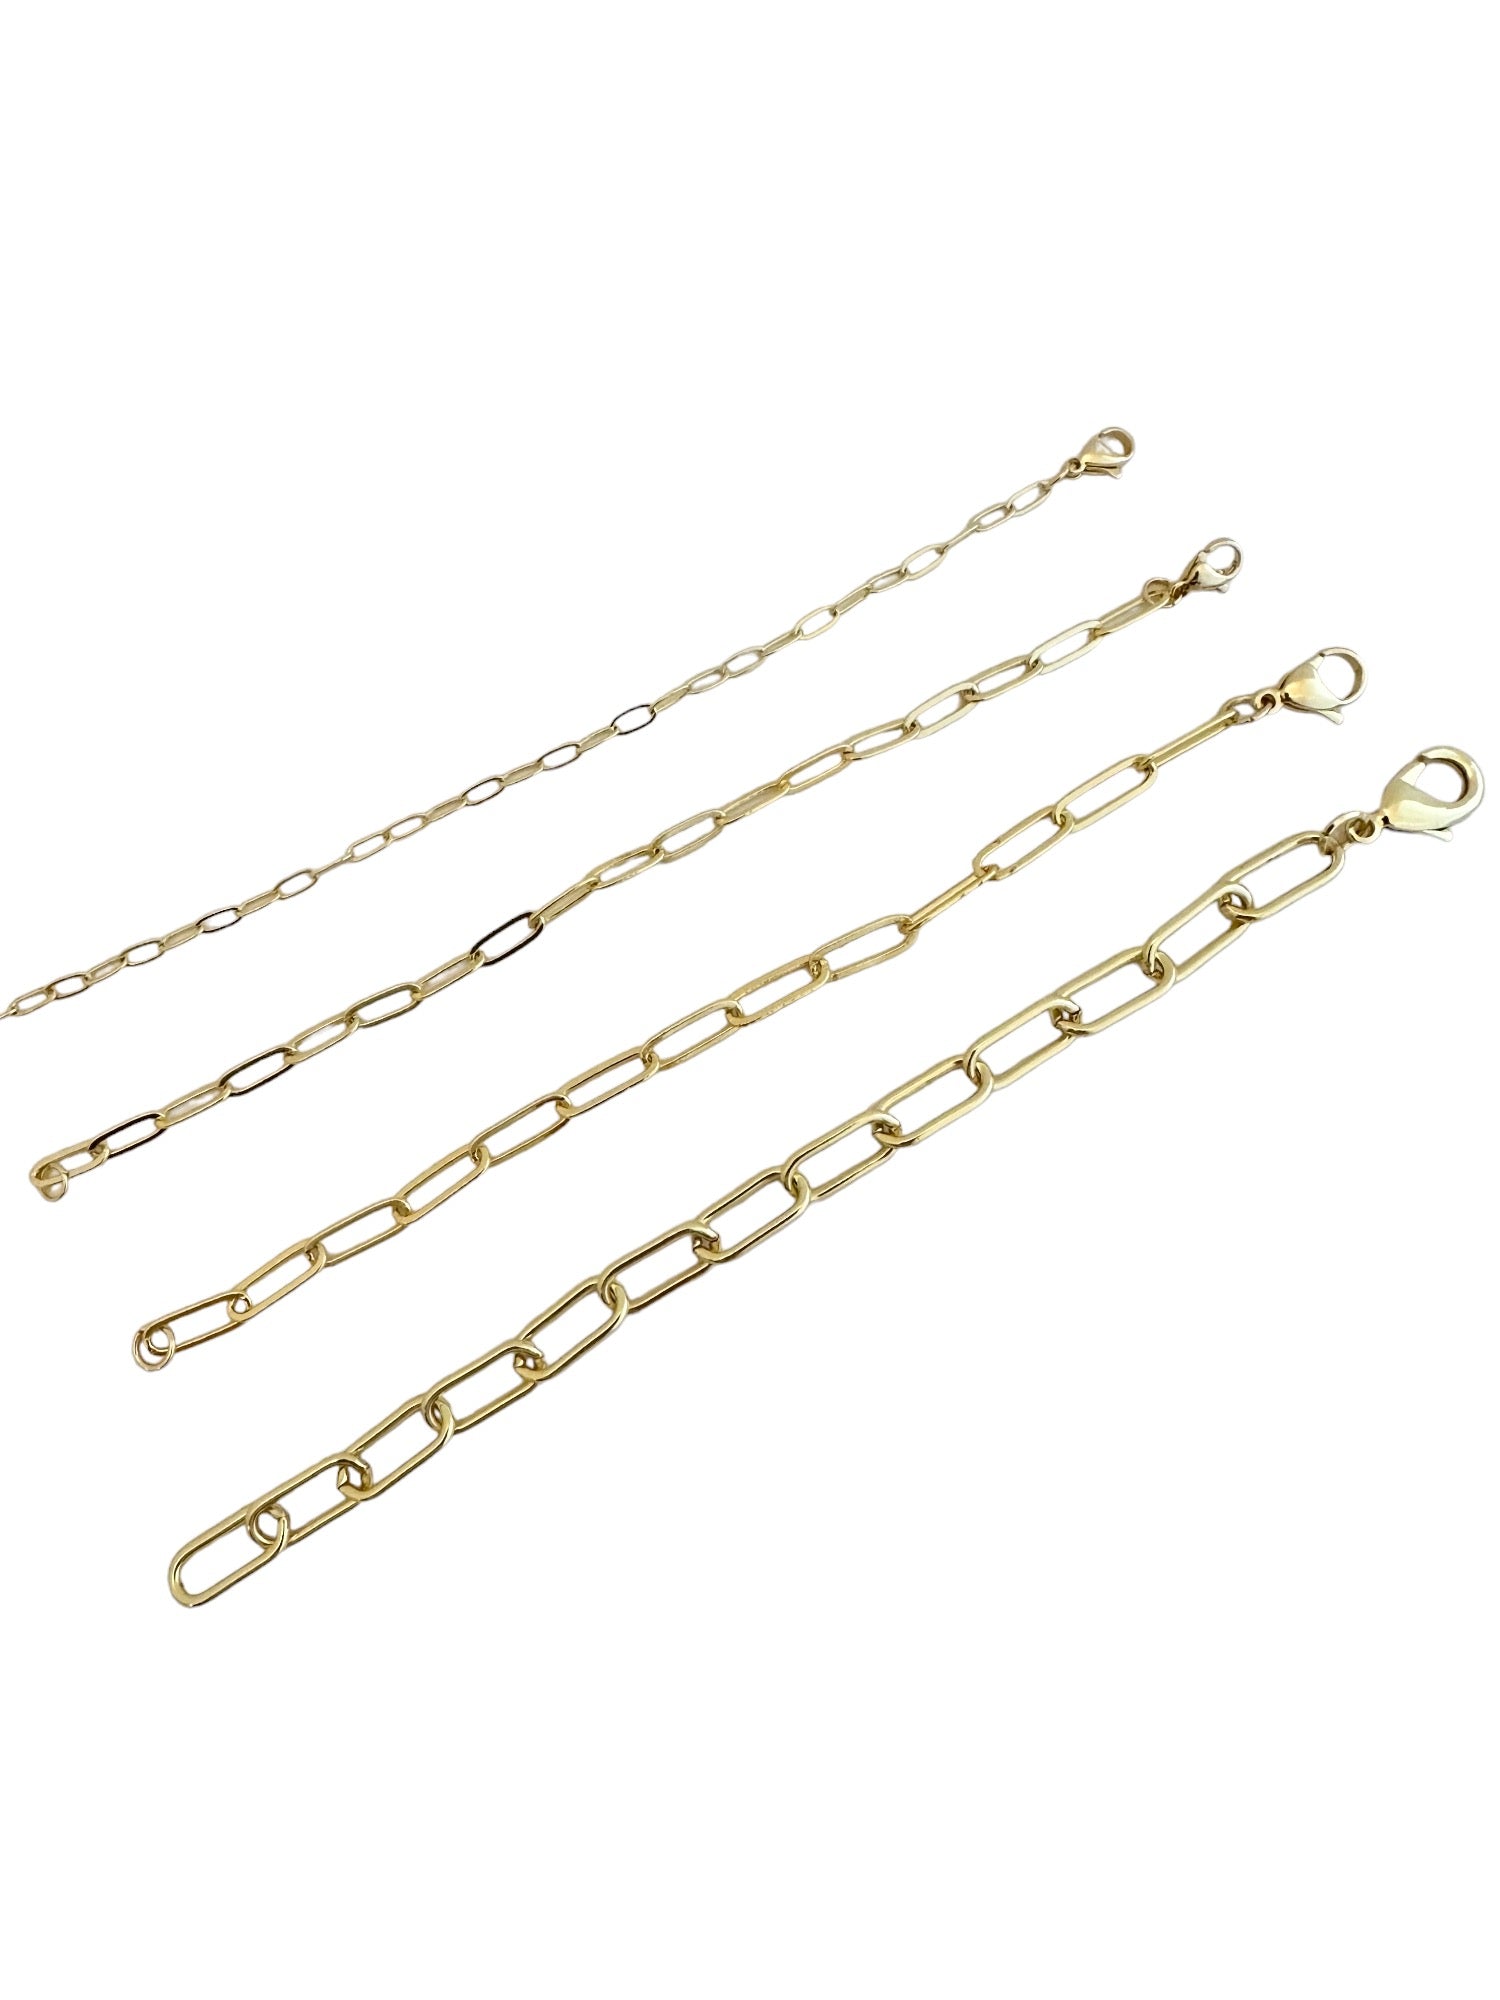 Shiny Gold Paperclip Link Bracelet